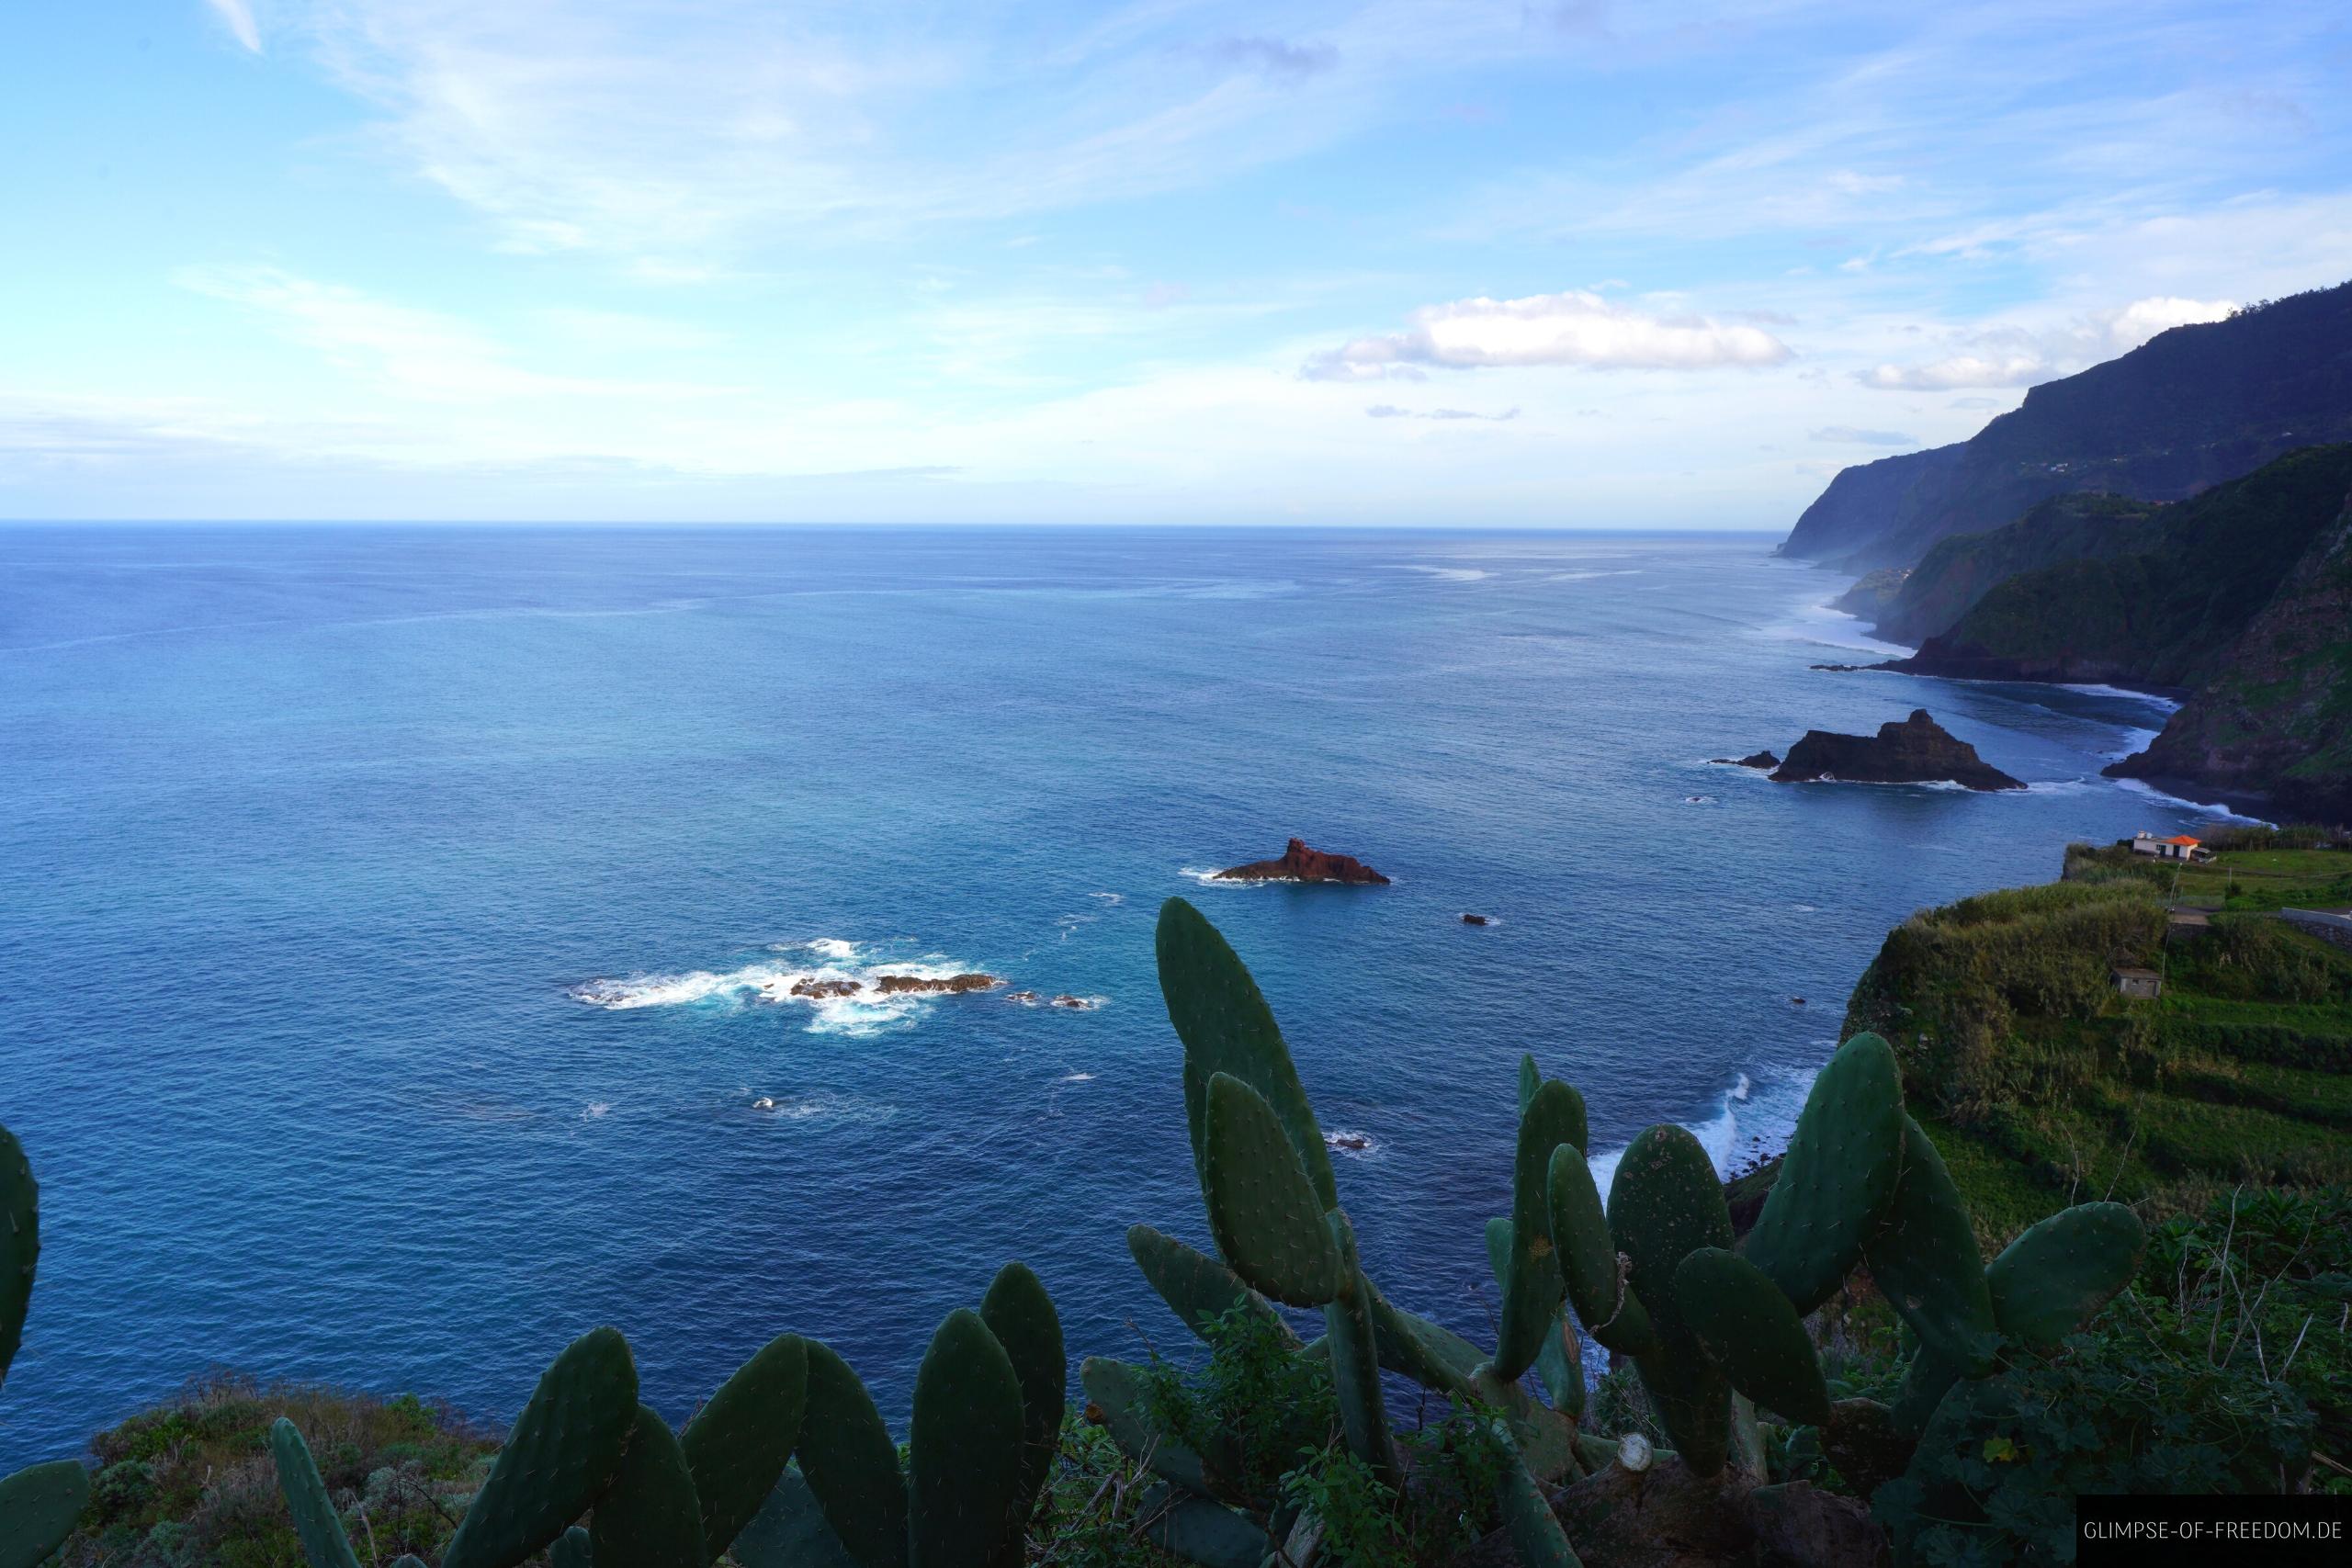 Aussichtspunkt Miradouro do Bom Jesus auf Madeira